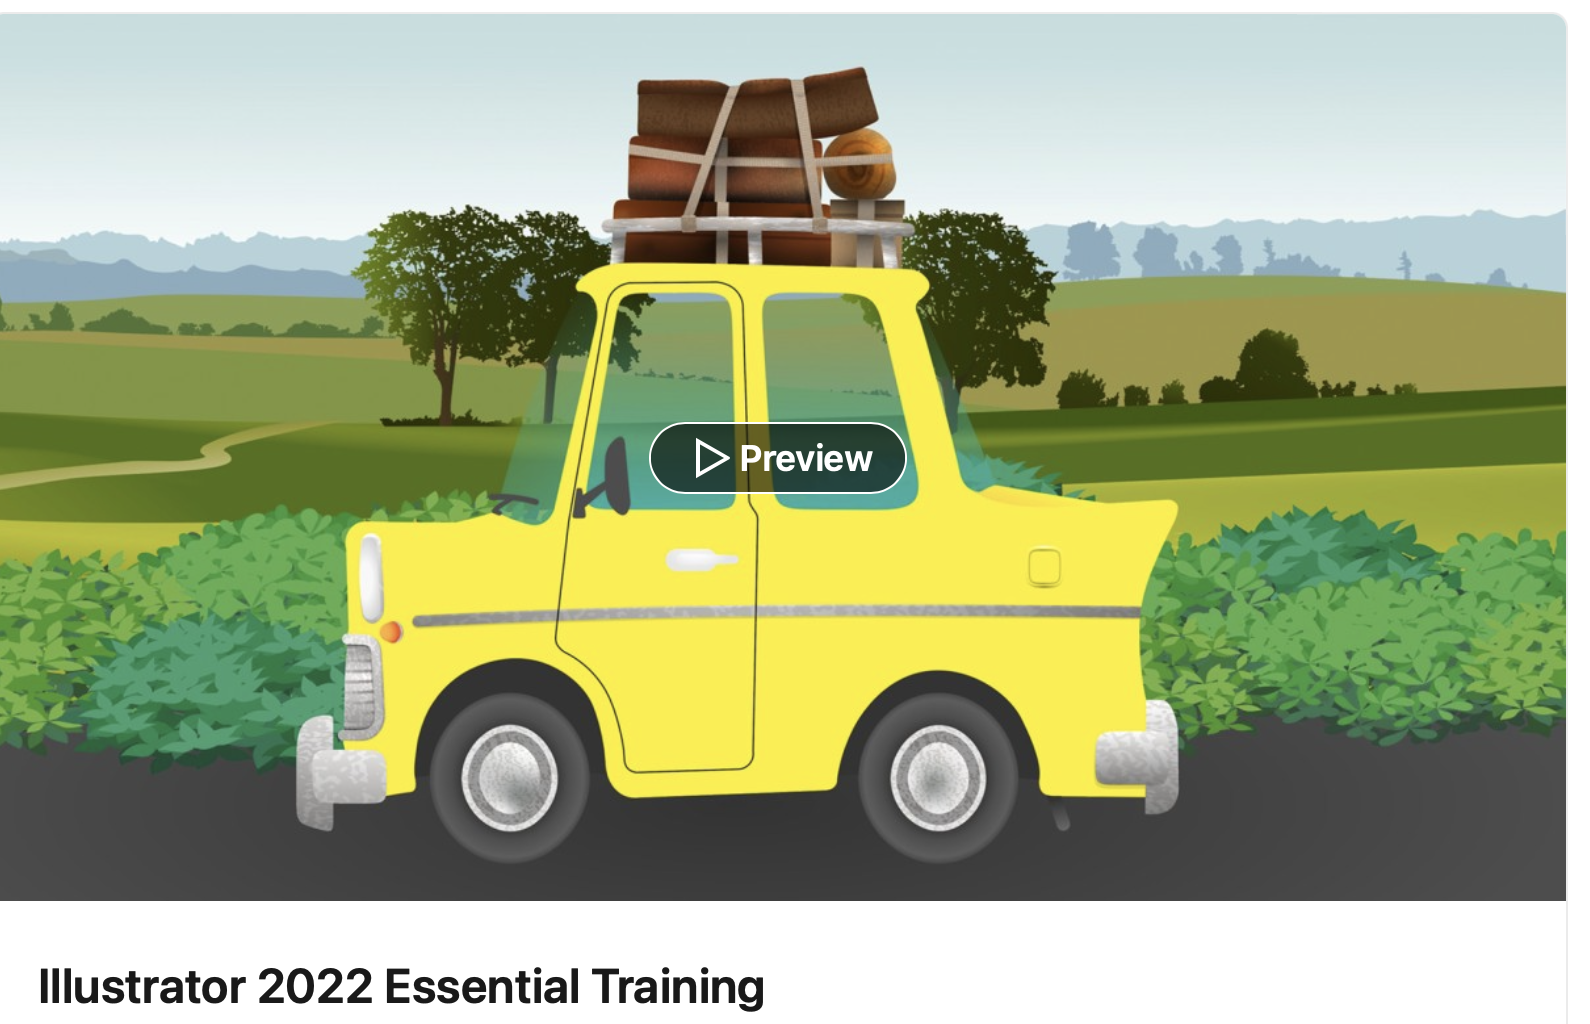 LinkedIn Illustrator 2022 Essential Training